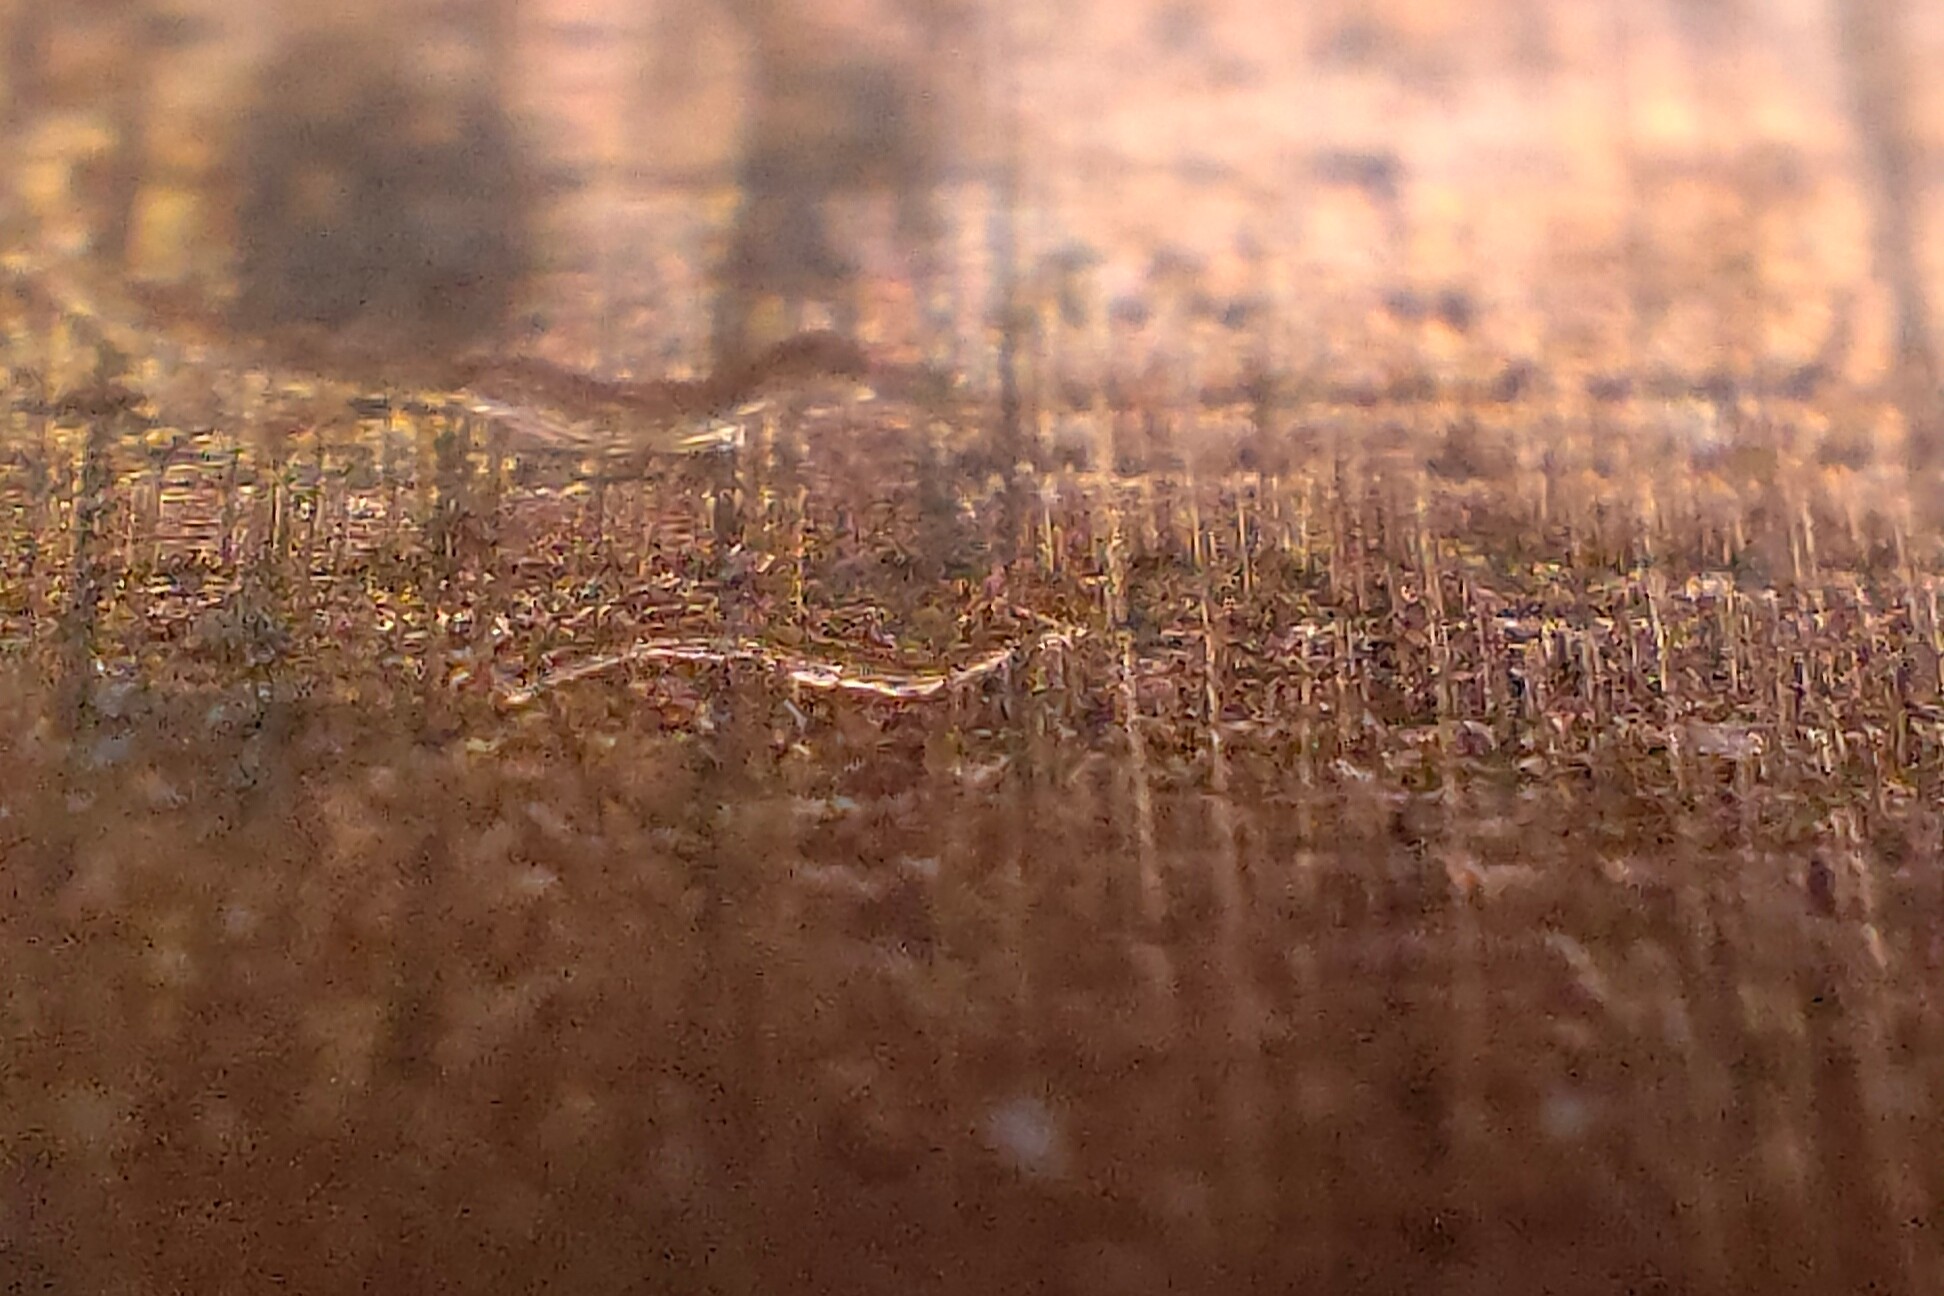 oppo find x3 pro microscope camera fun gimmick copper micro